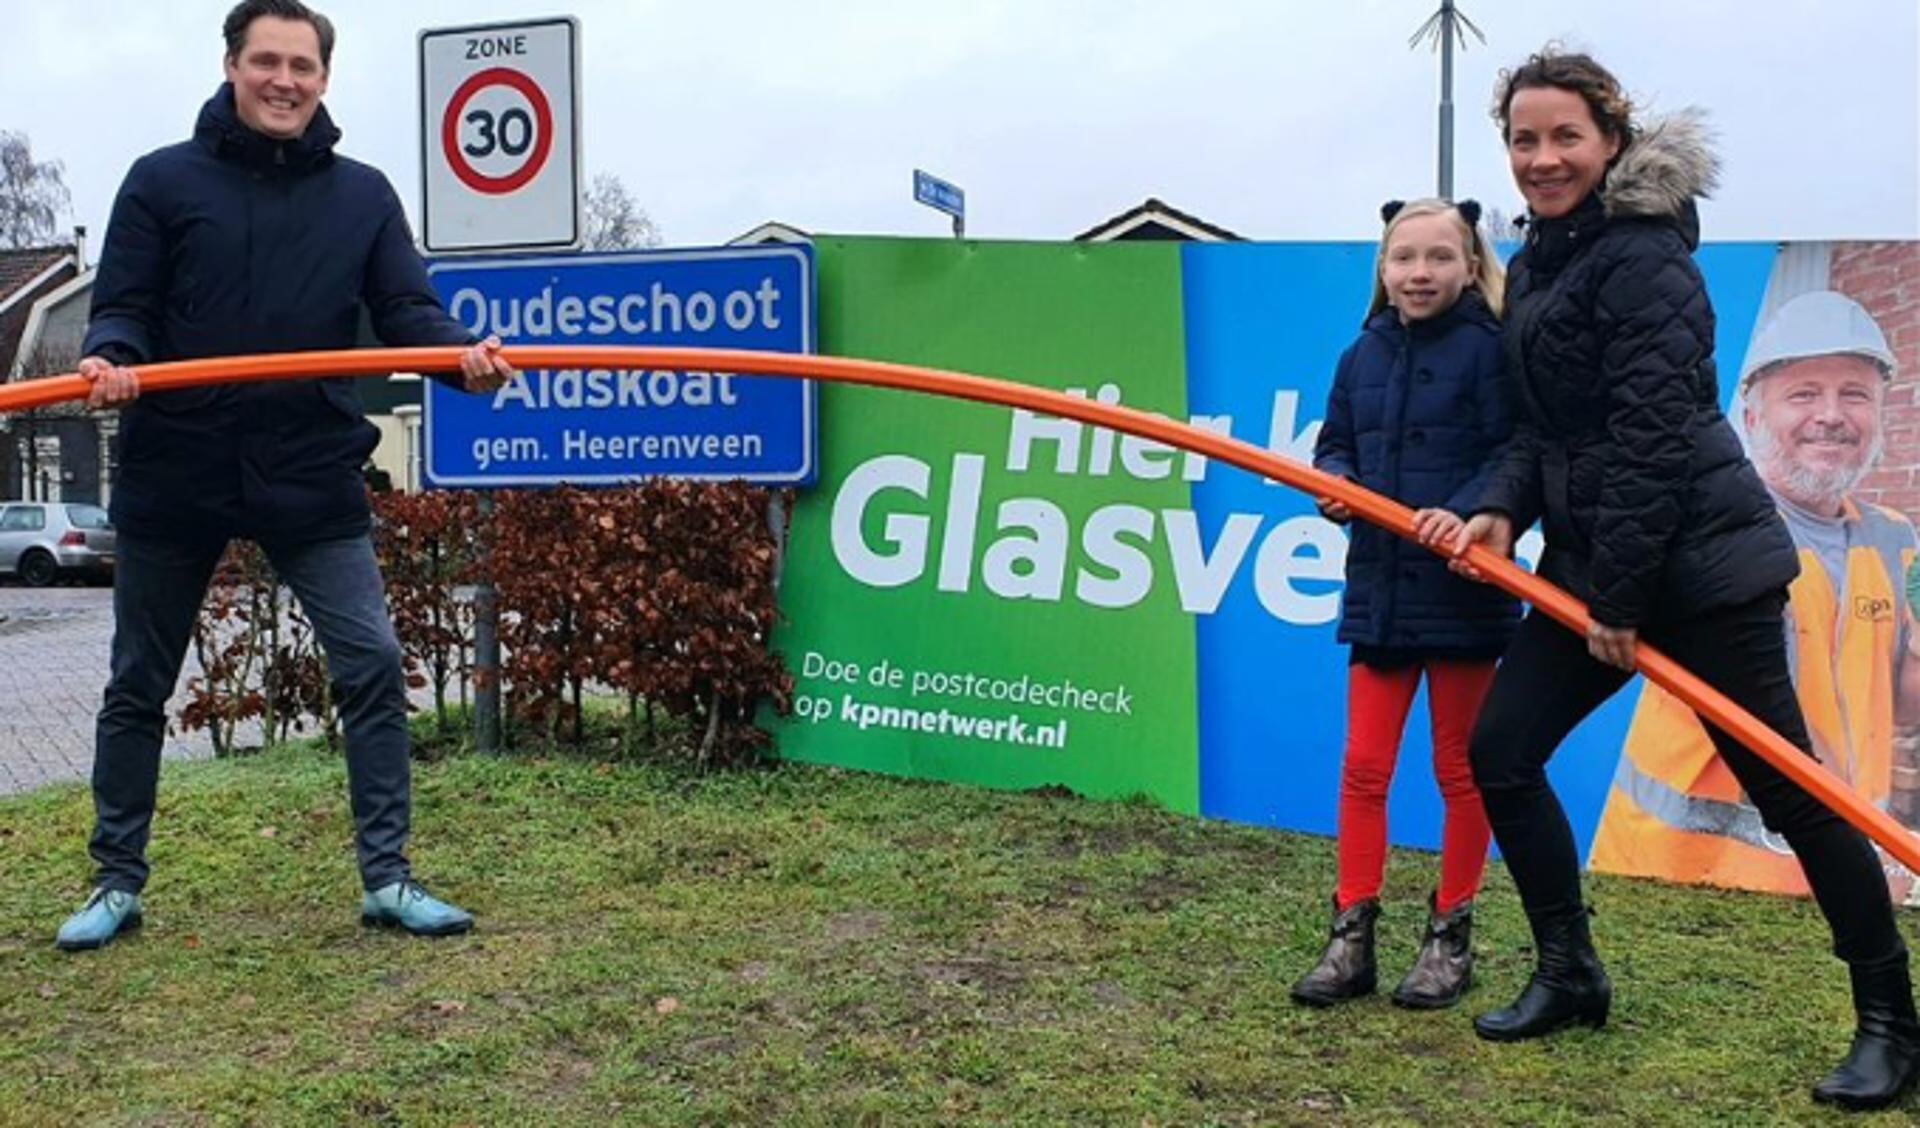 Eeltje Bakker van Plaatselijk Belang en wethouder Rinkes met haar dochter zijn verheugd dat ook Oudeschoot wordt aangesloten op het glasvezelnetwerk van KPN.